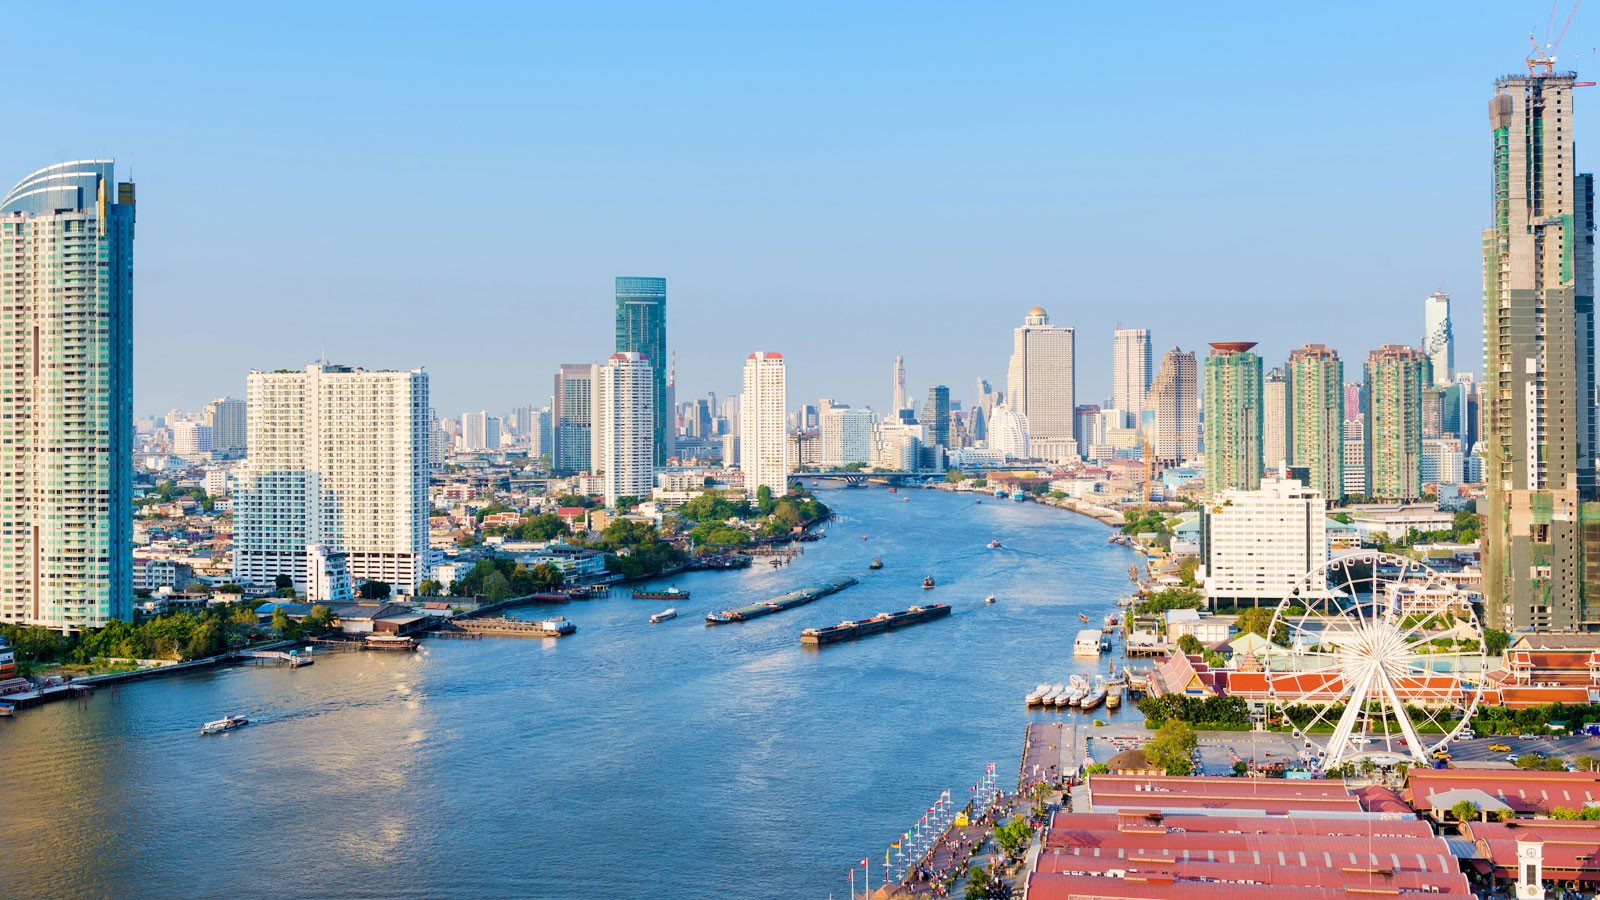 Бангкок четвертый год подряд признан самым посещаемым городом в мире